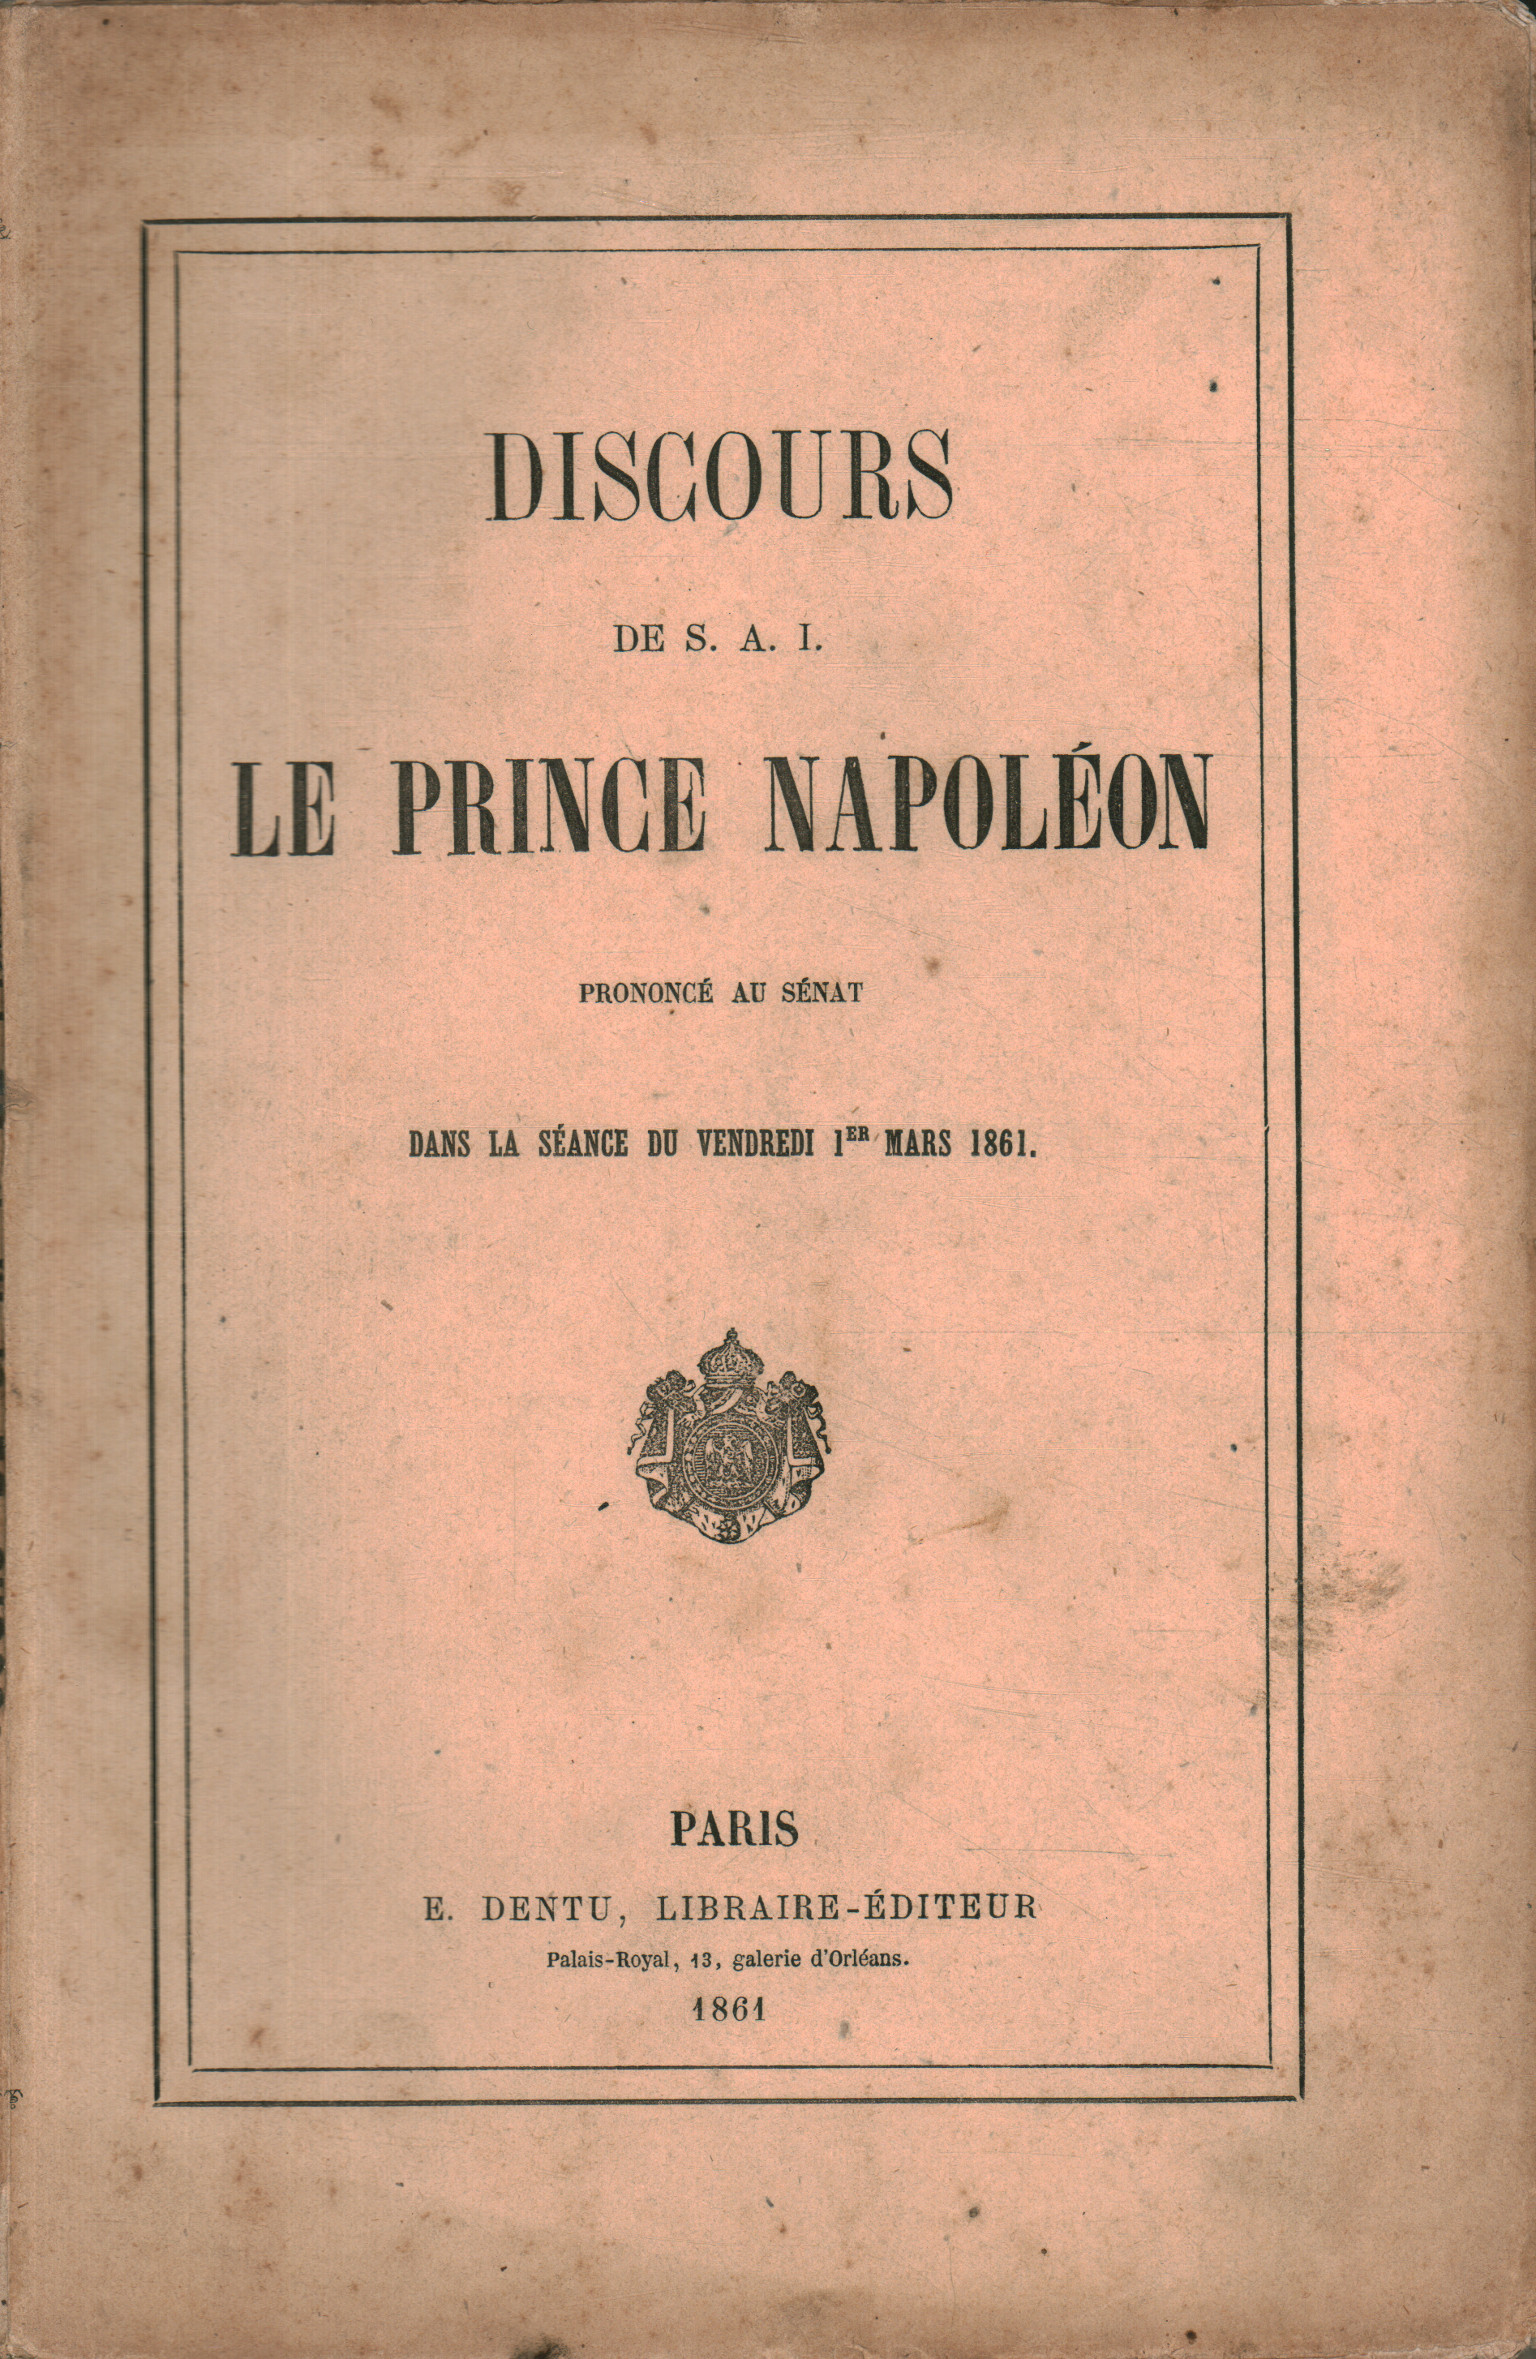 Books - History - Contemporary, Discours de S.A.I le prince Napoléo